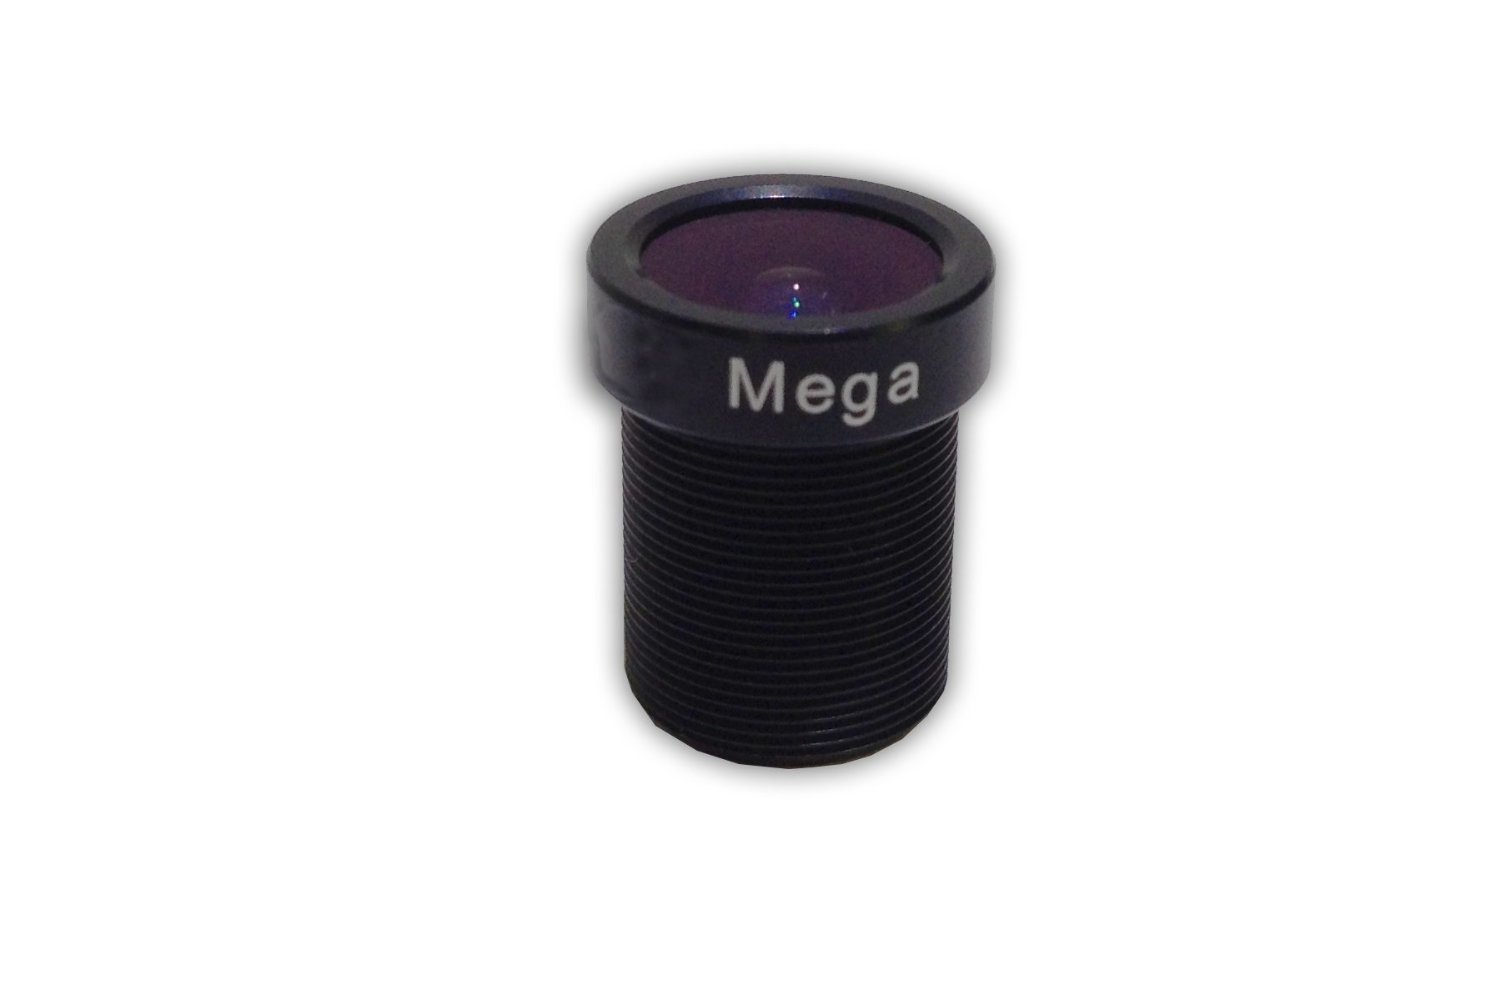 12mm Lens for Contour (Roam-Roam2-Roam3-Plus-Plus2)